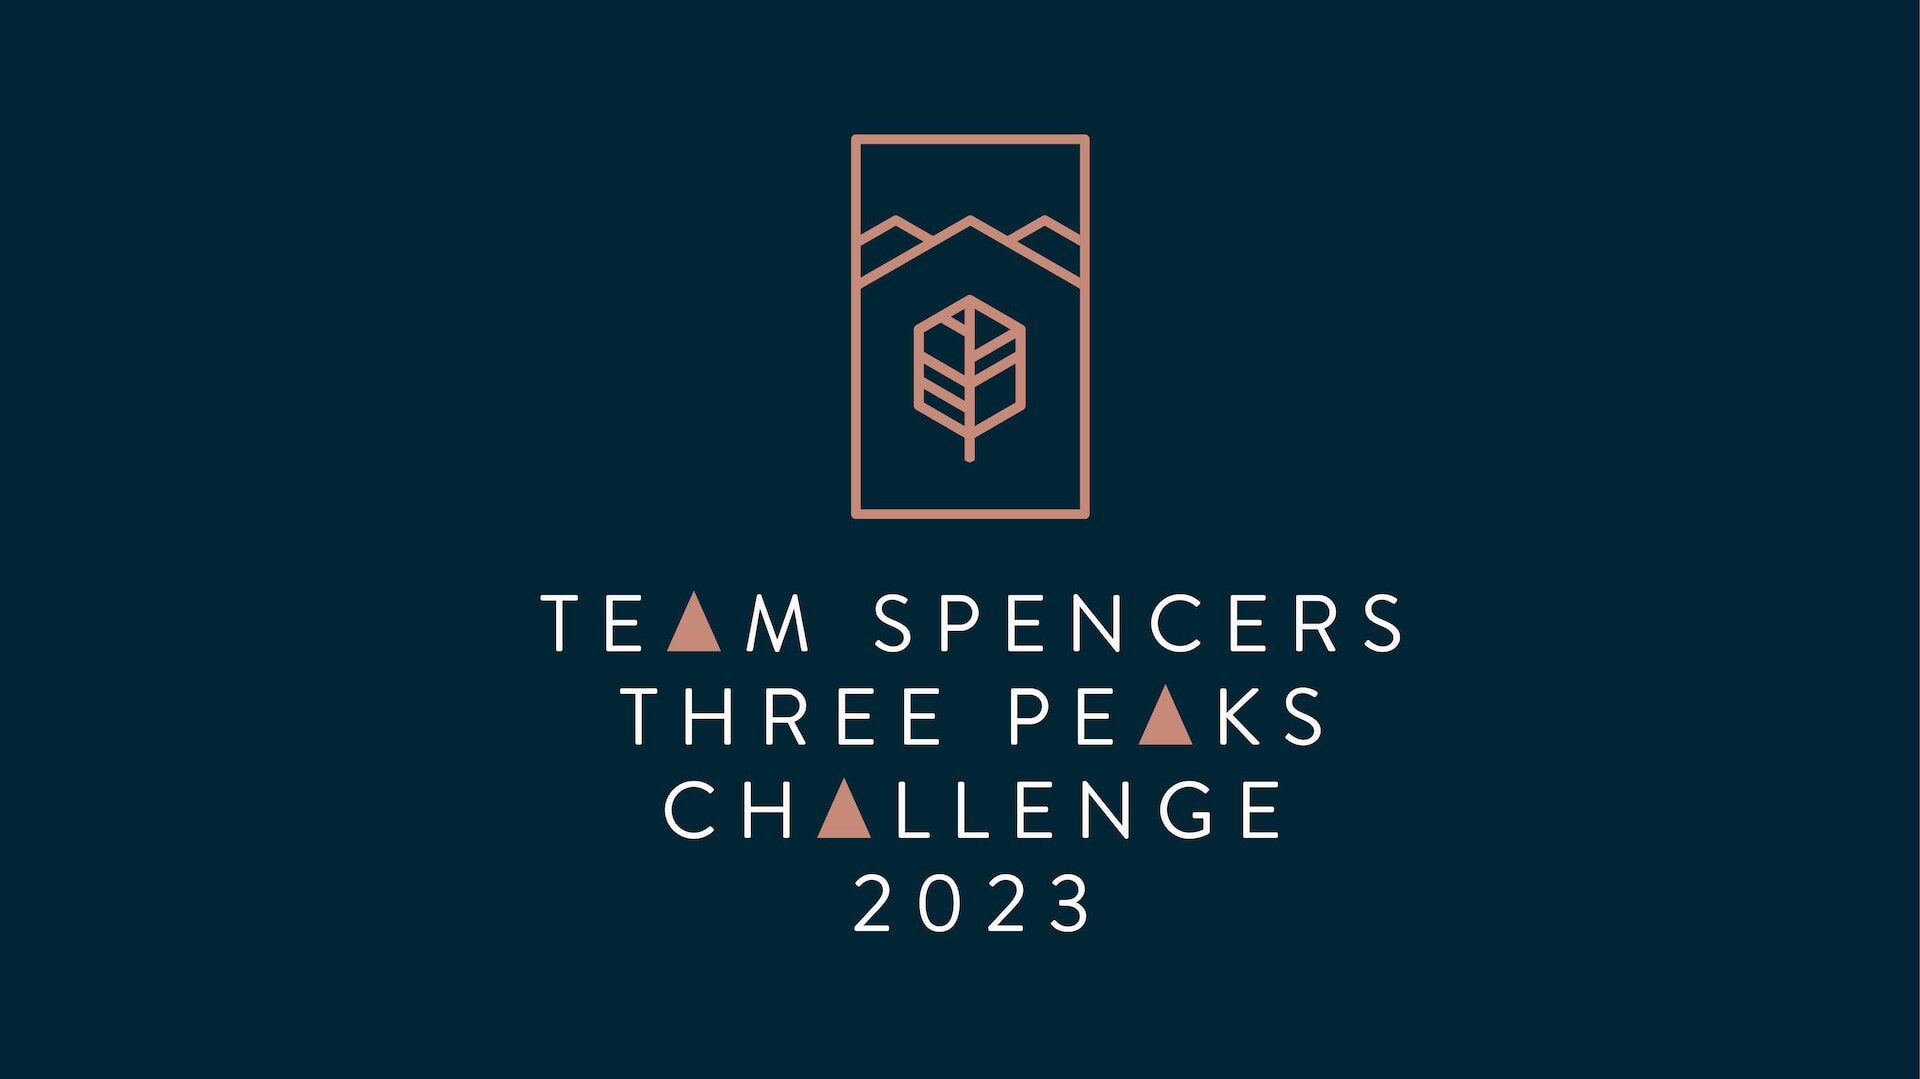 "Team Spencers Three Peaks Challenge 2023"